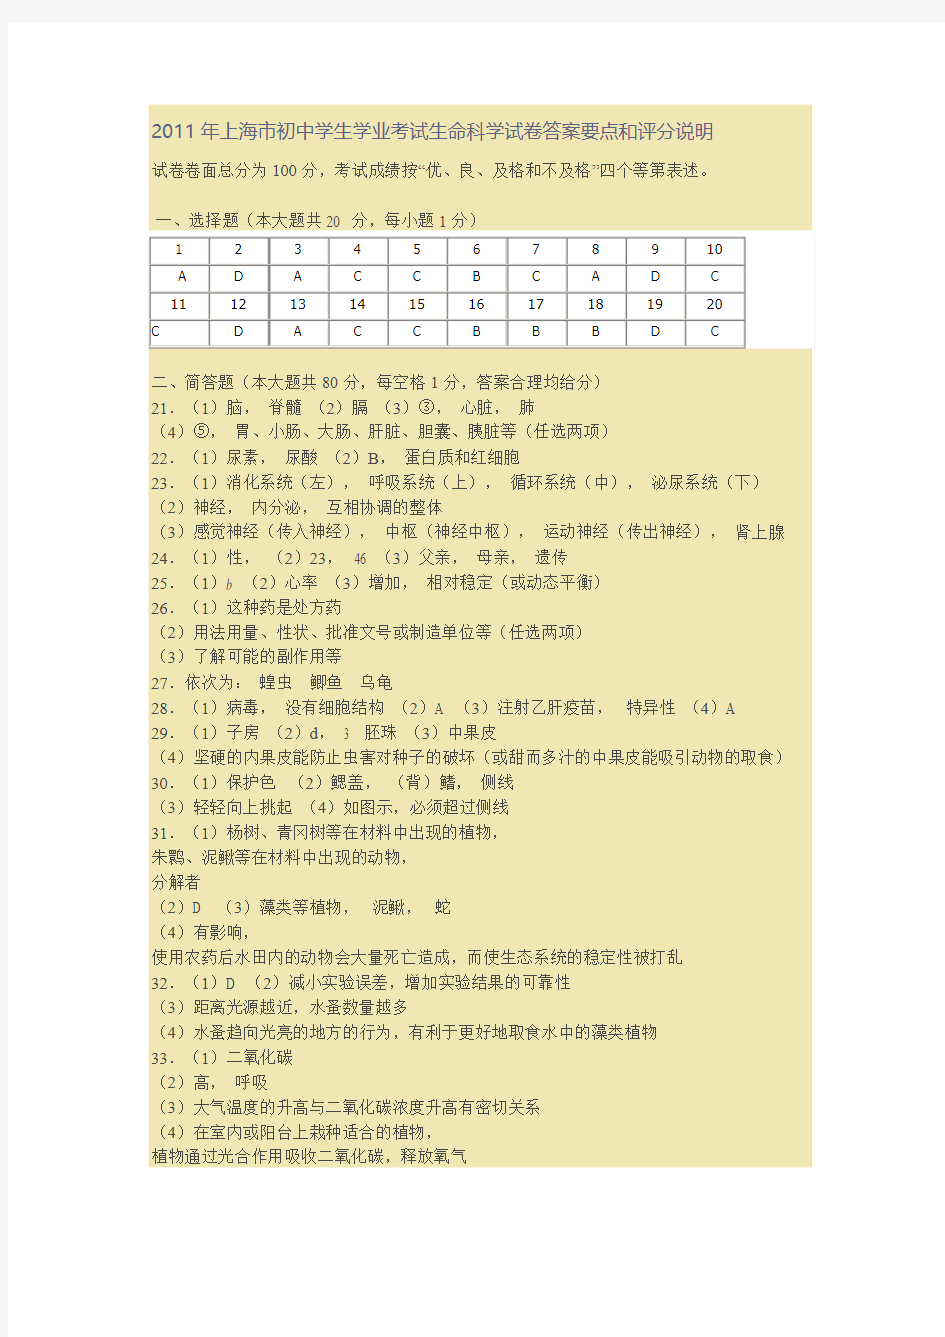 2011年上海市初中学生学业考试生命科学试卷答案要点和评分说明1